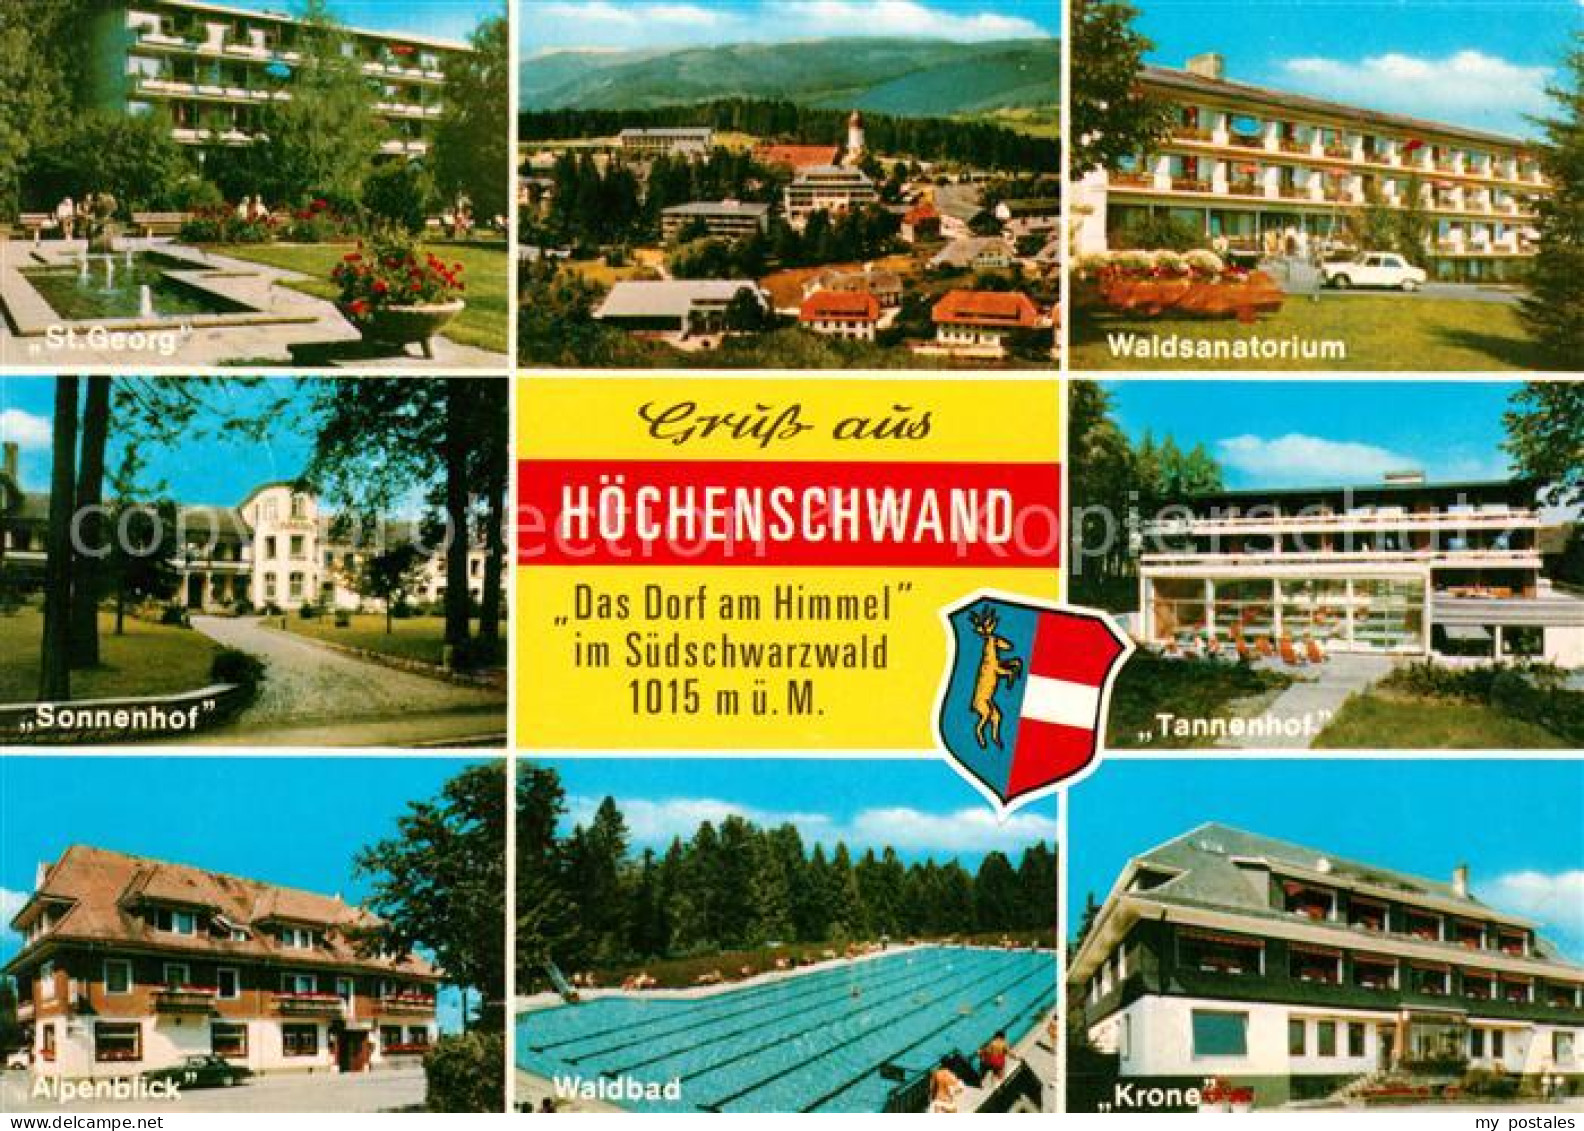 73125751 Hoechenschwand St. Georg Waldsanatorium Tannenhof Krone Waldbad Alpenbl - Hoechenschwand